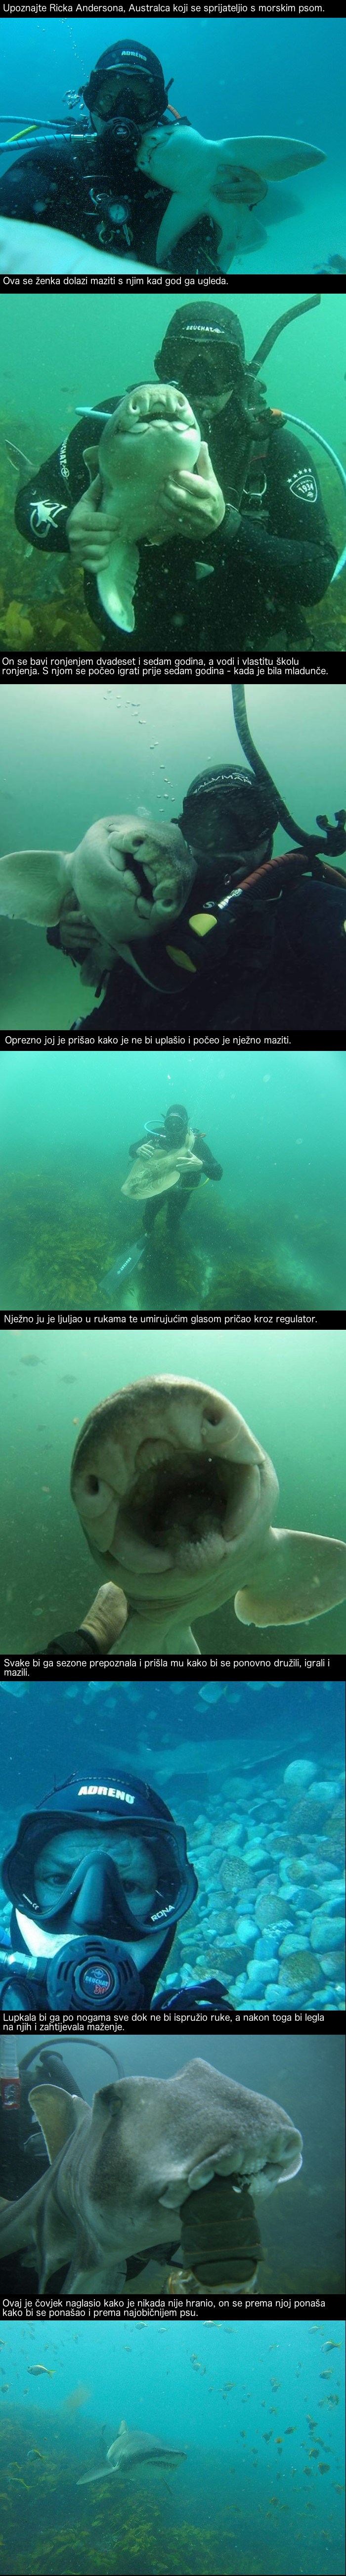 Nevjerojatno prijateljstvo između čovjeka i morskog psa koje traje sedam godina